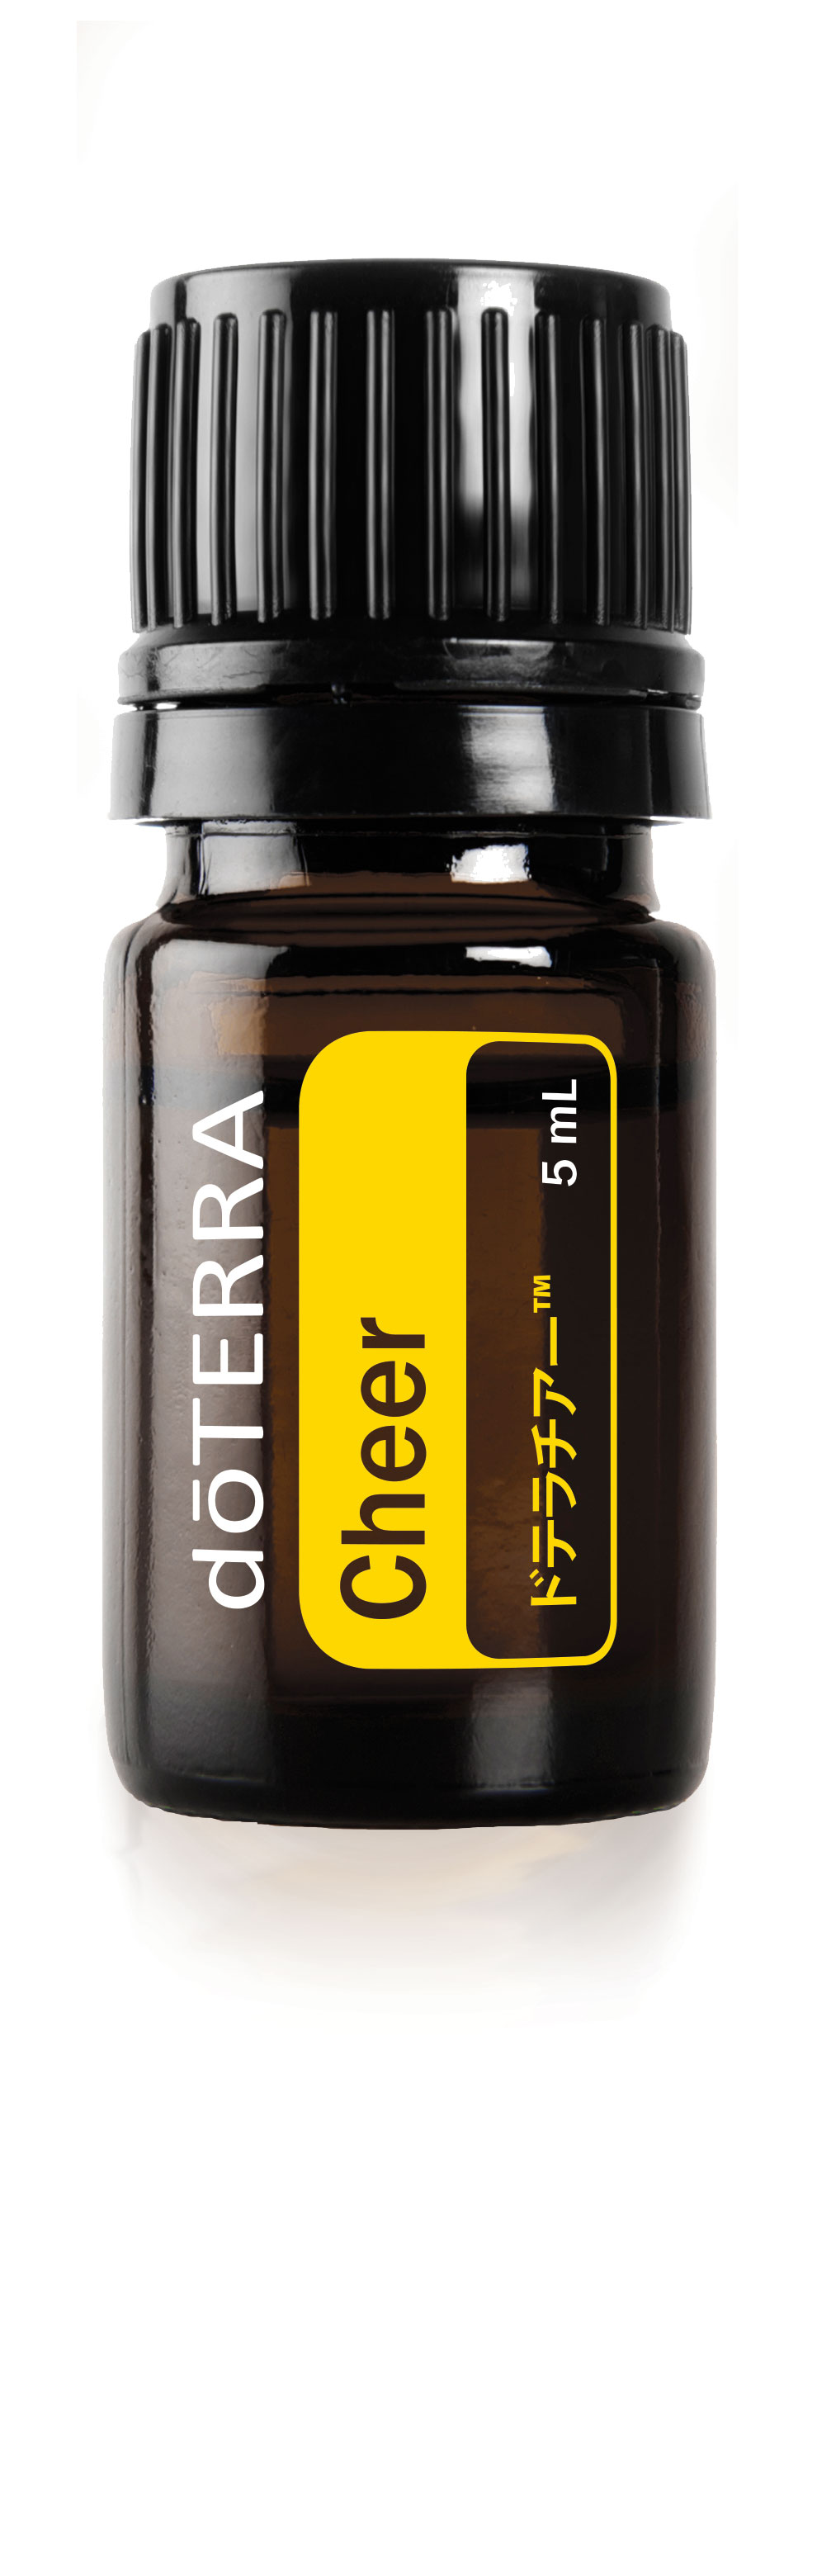 ドテラチアー | doTERRA エッセンシャルオイル | doTERRA Essential Oils